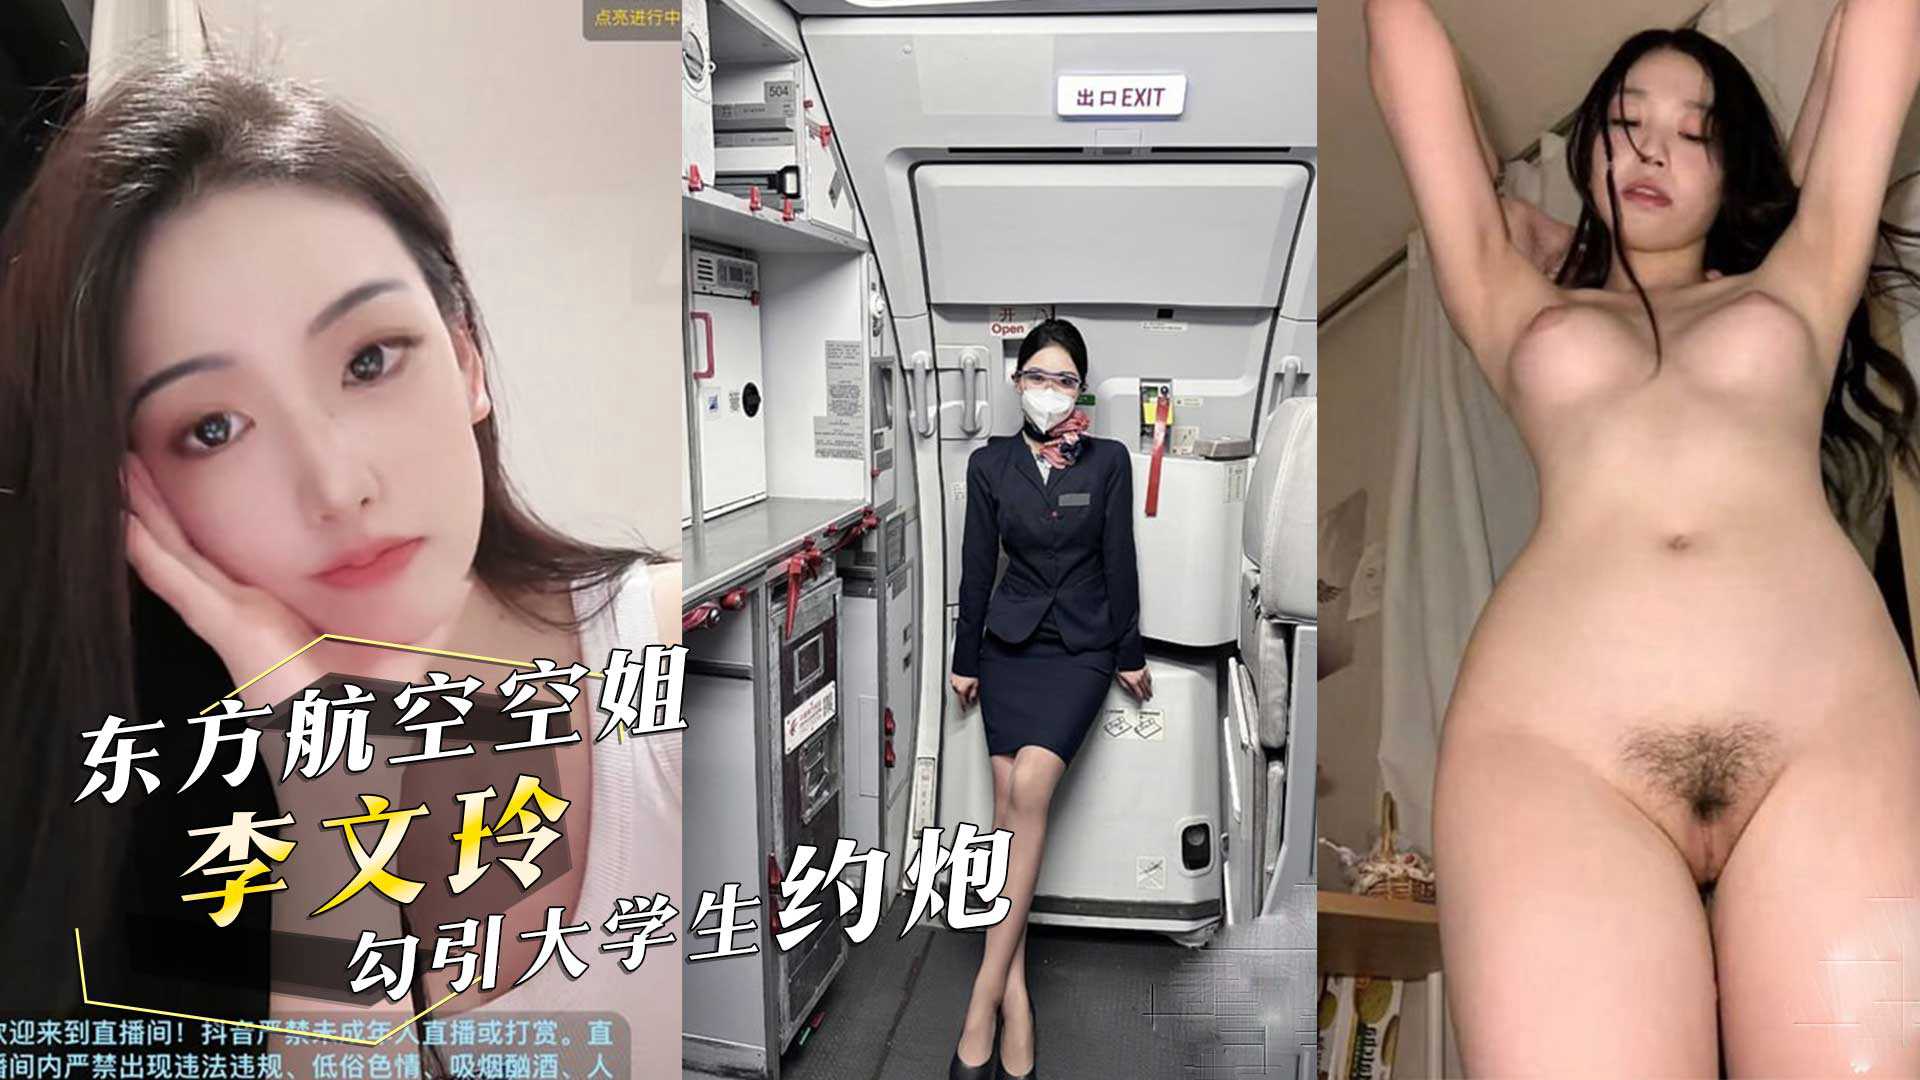 真实投稿！东方航空空姐『李文玲』在深圳勾引大学生约炮，用男友钱开房！抖音也被曝出！